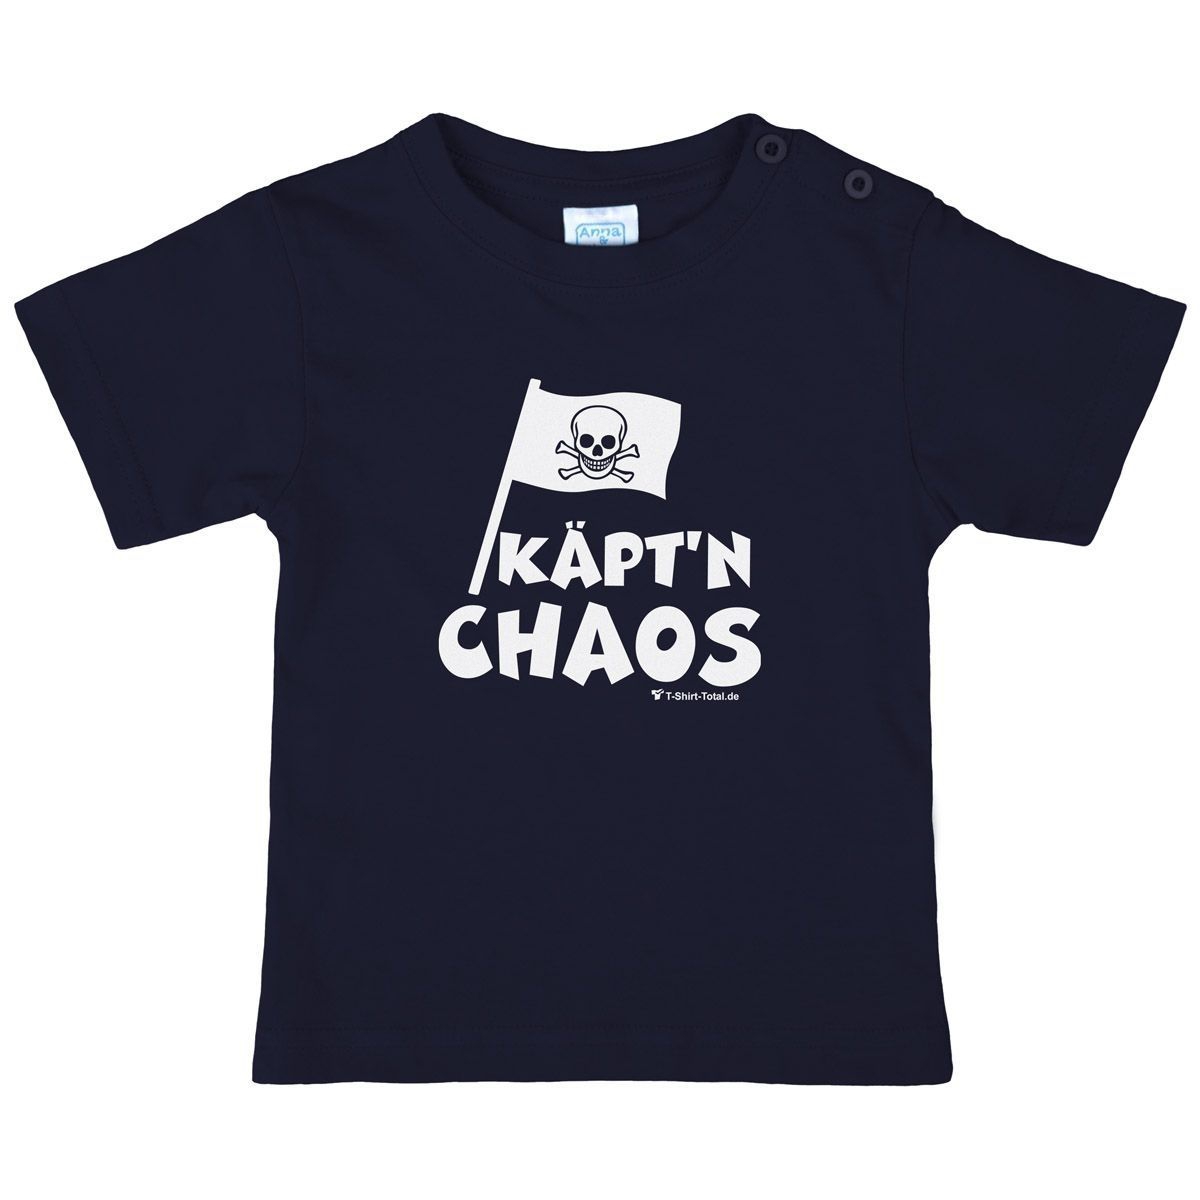 Käptn Chaos Kinder T-Shirt navy 104